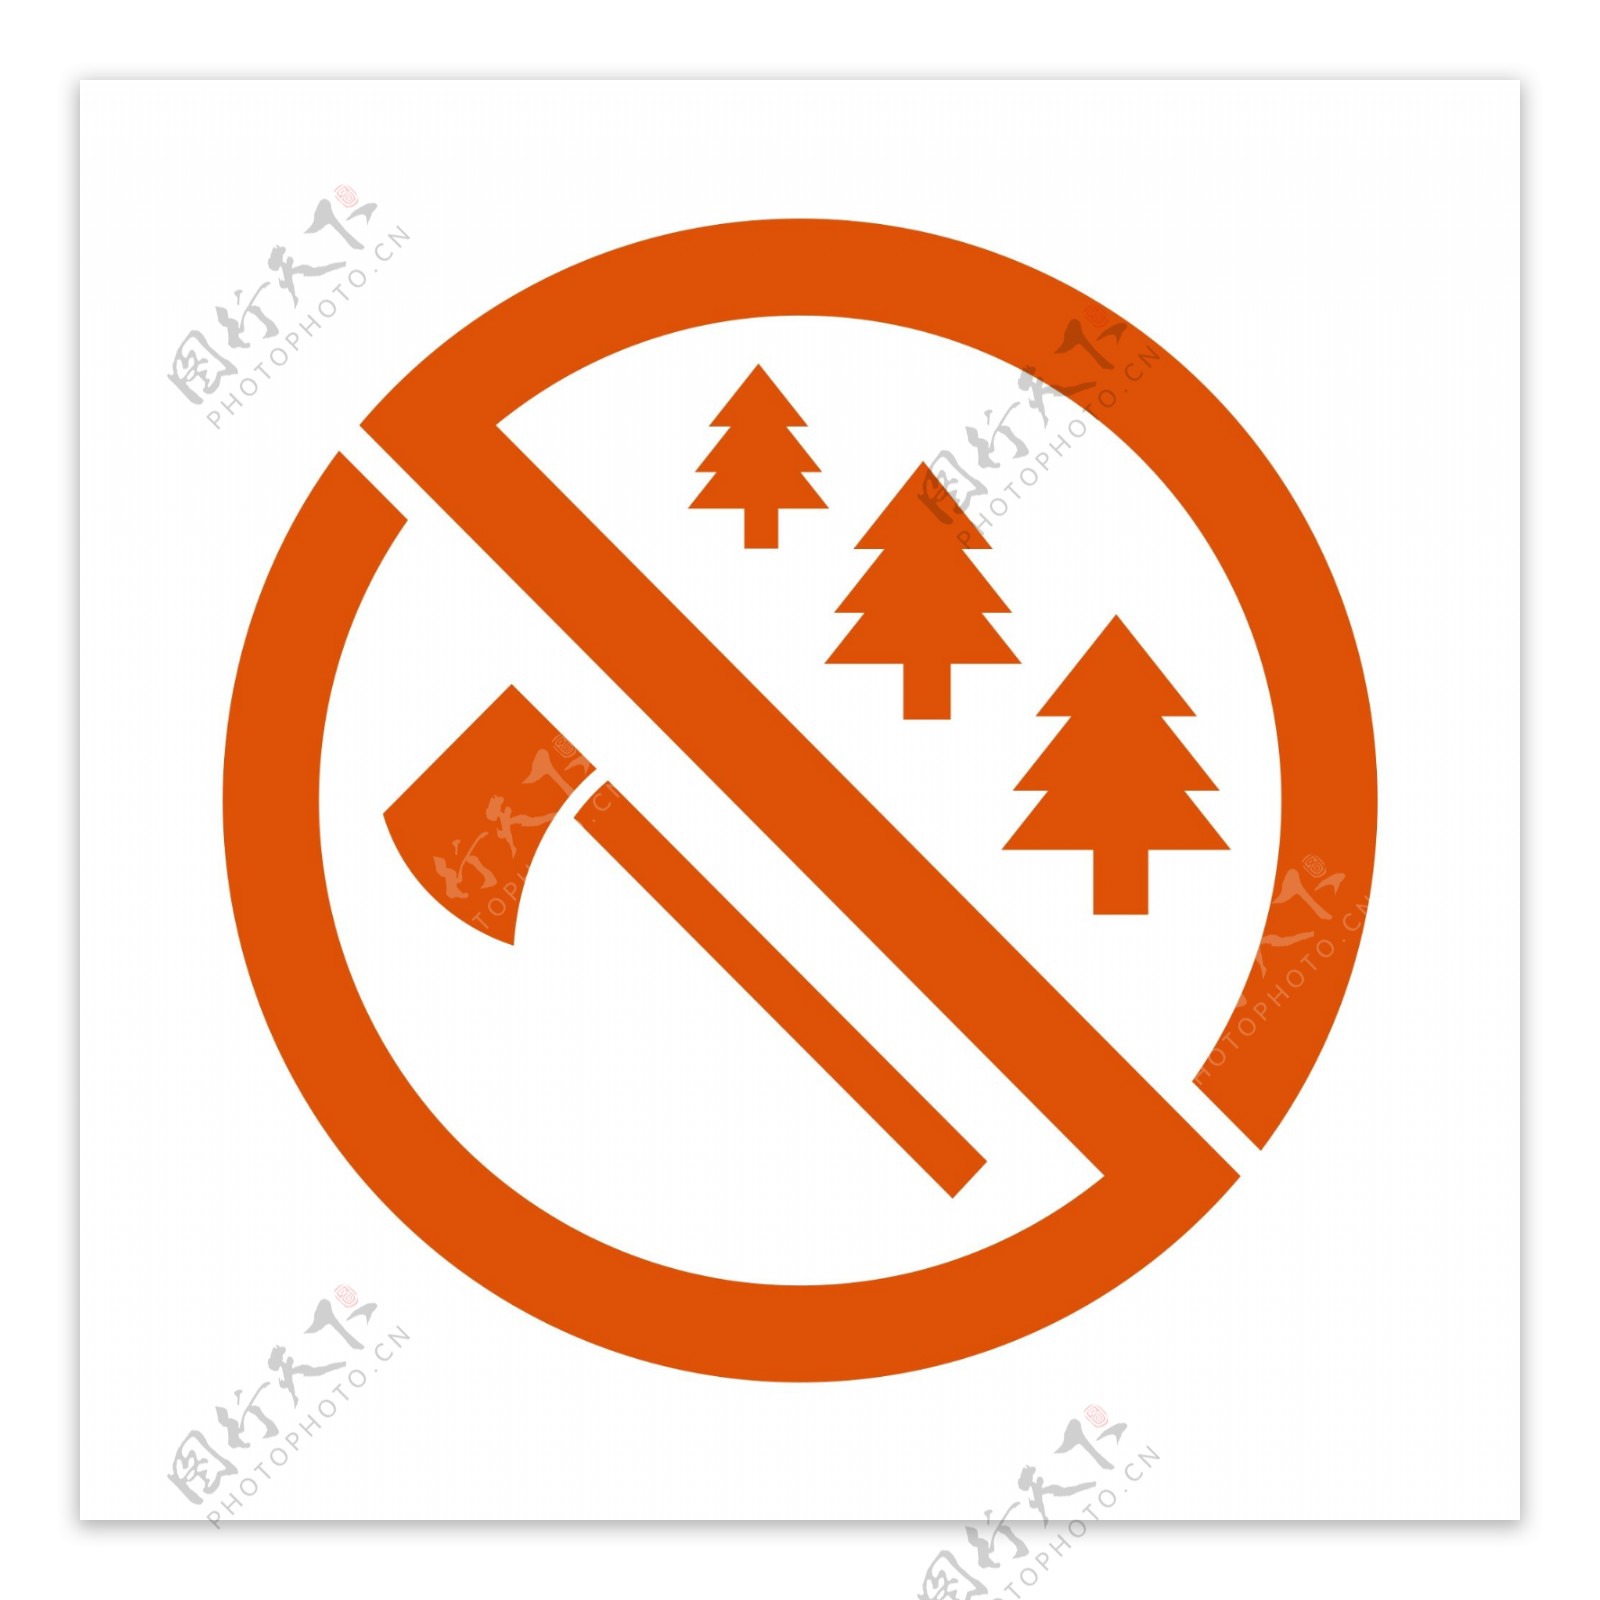 禁止砍树